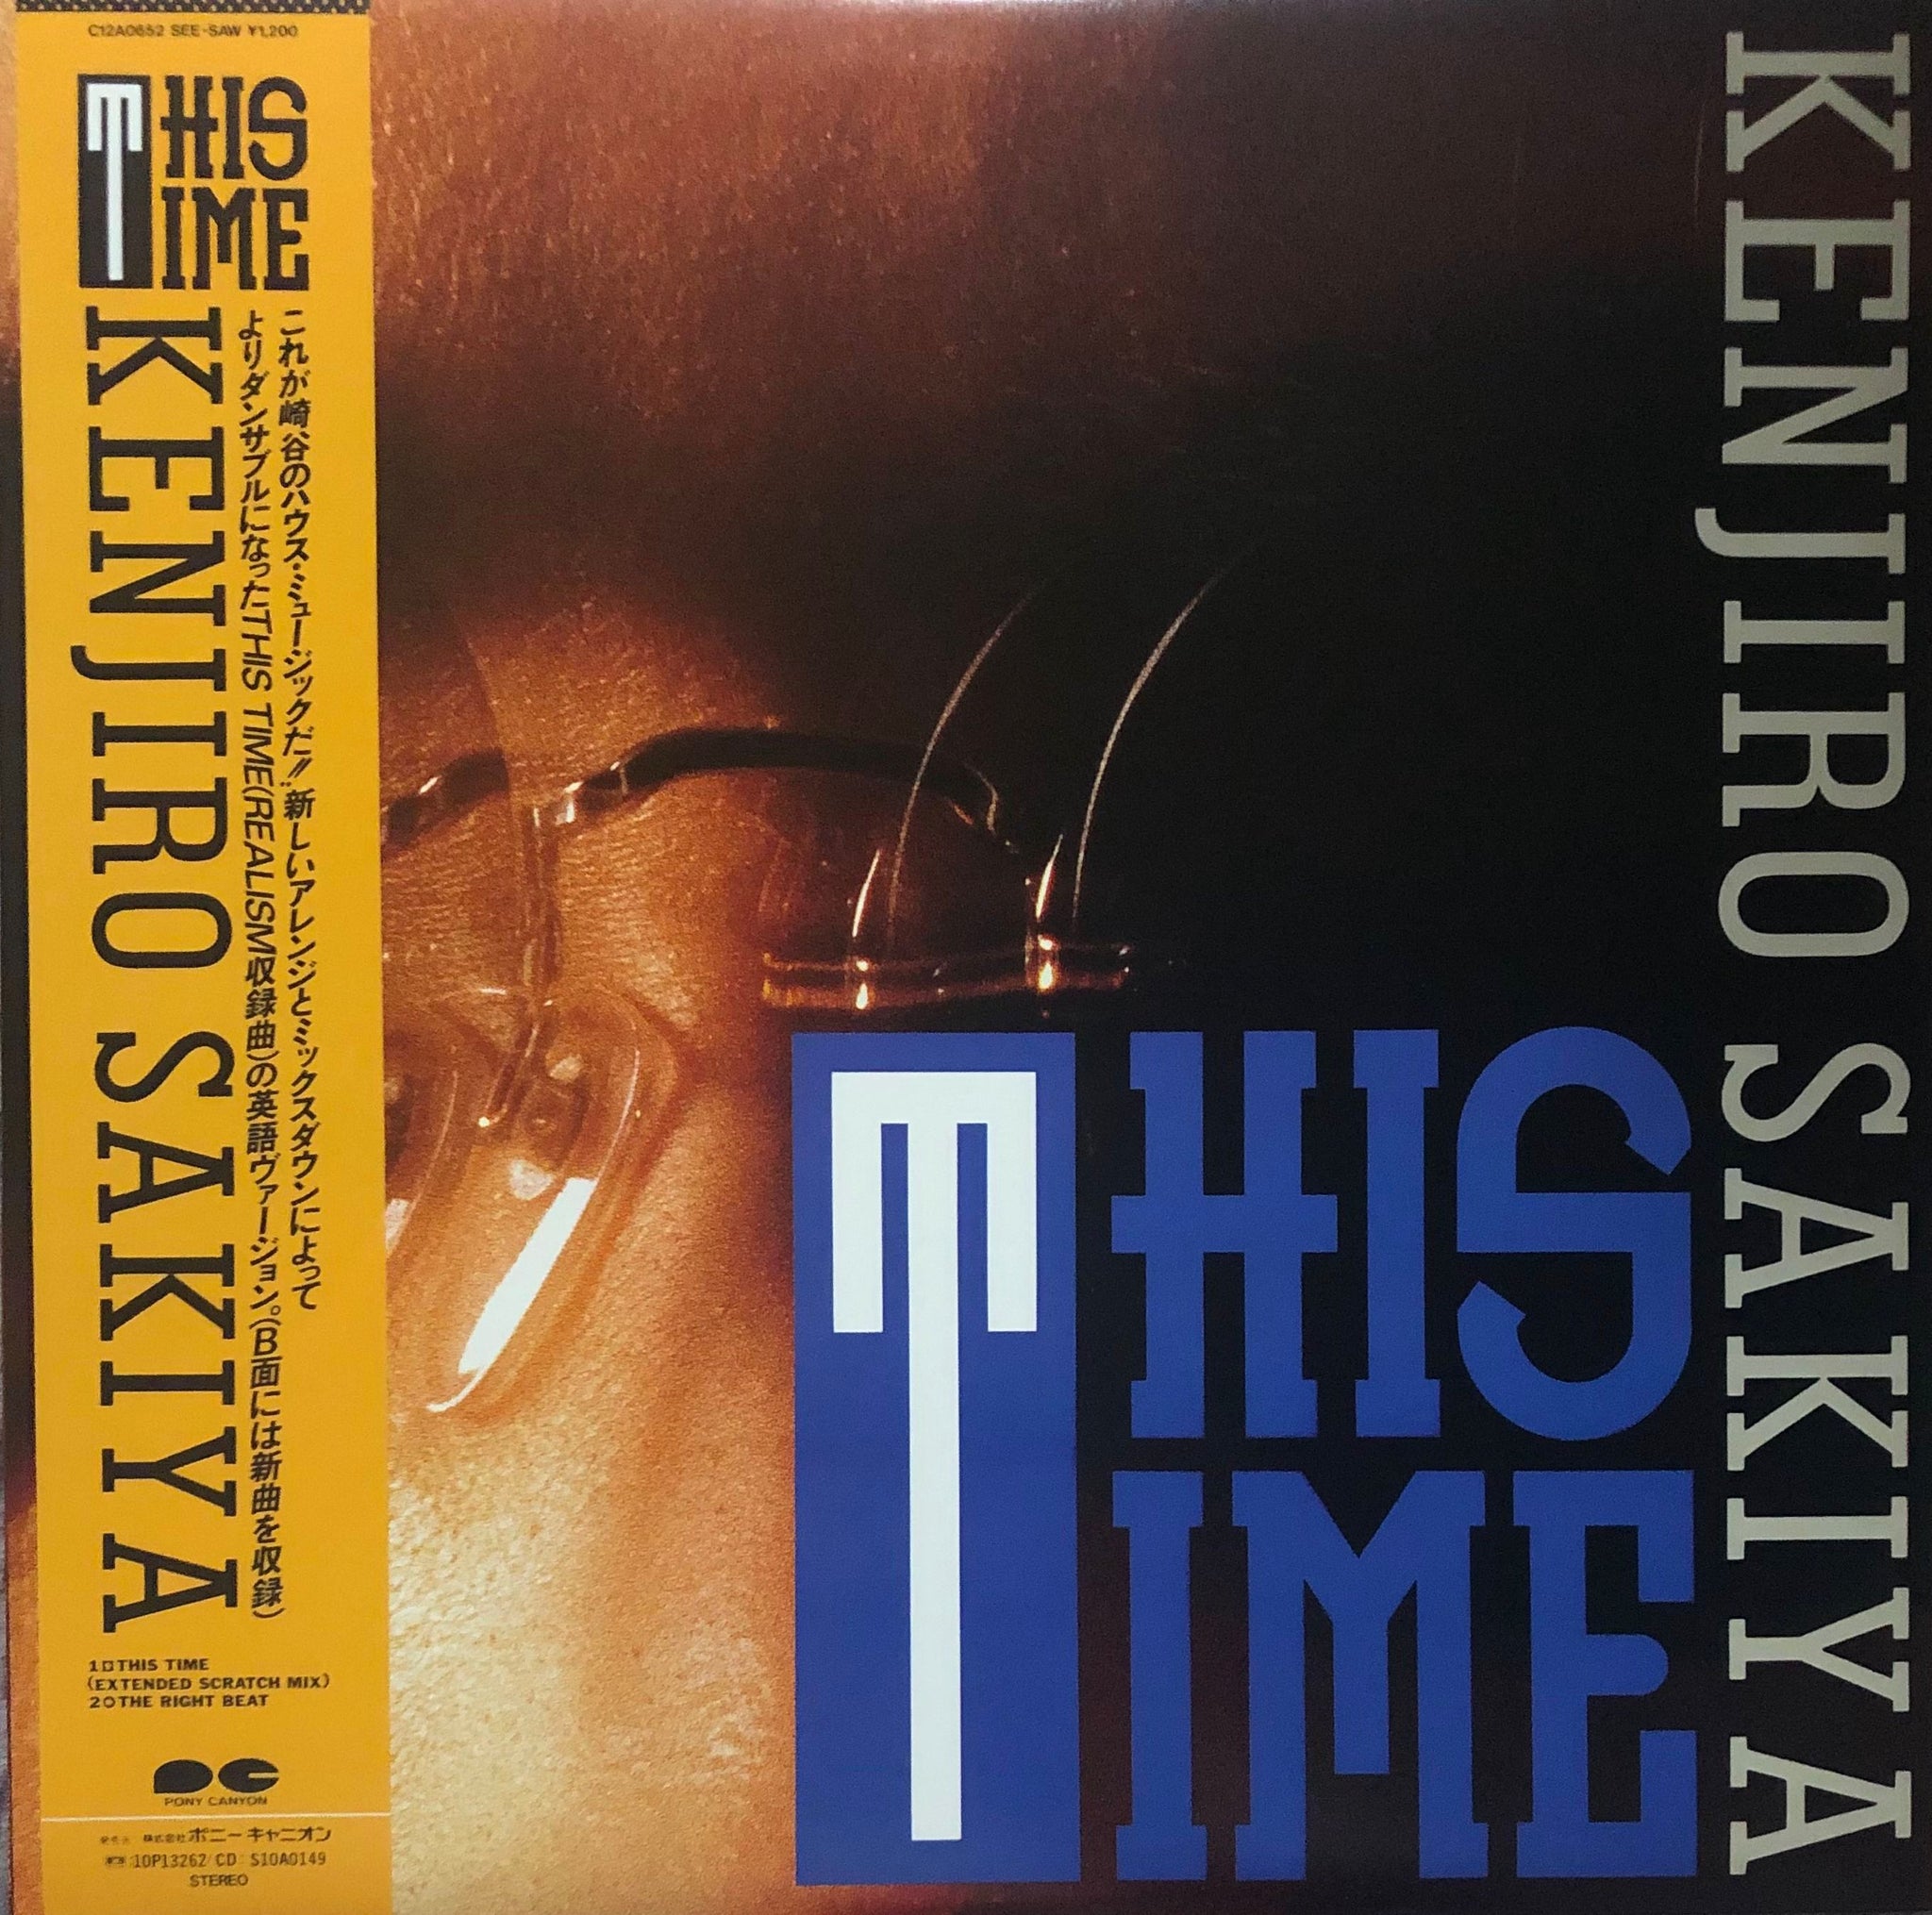 Kenjiro Sakiya u003d 崎谷健次郎 u200e– This Time – Galapagos Records